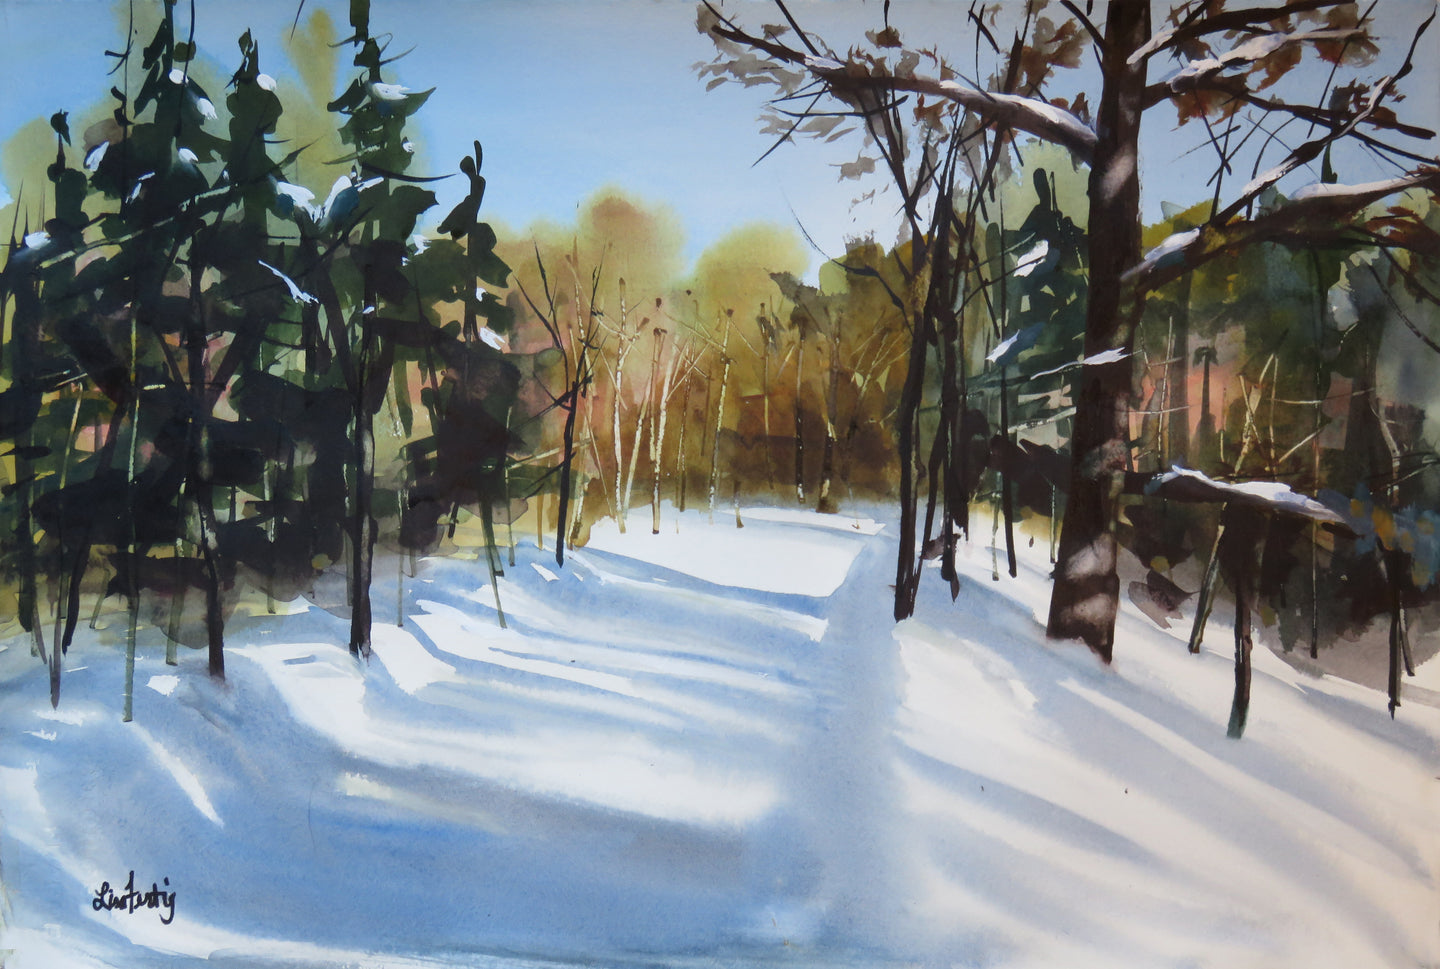 Shadows on the Snowy Path